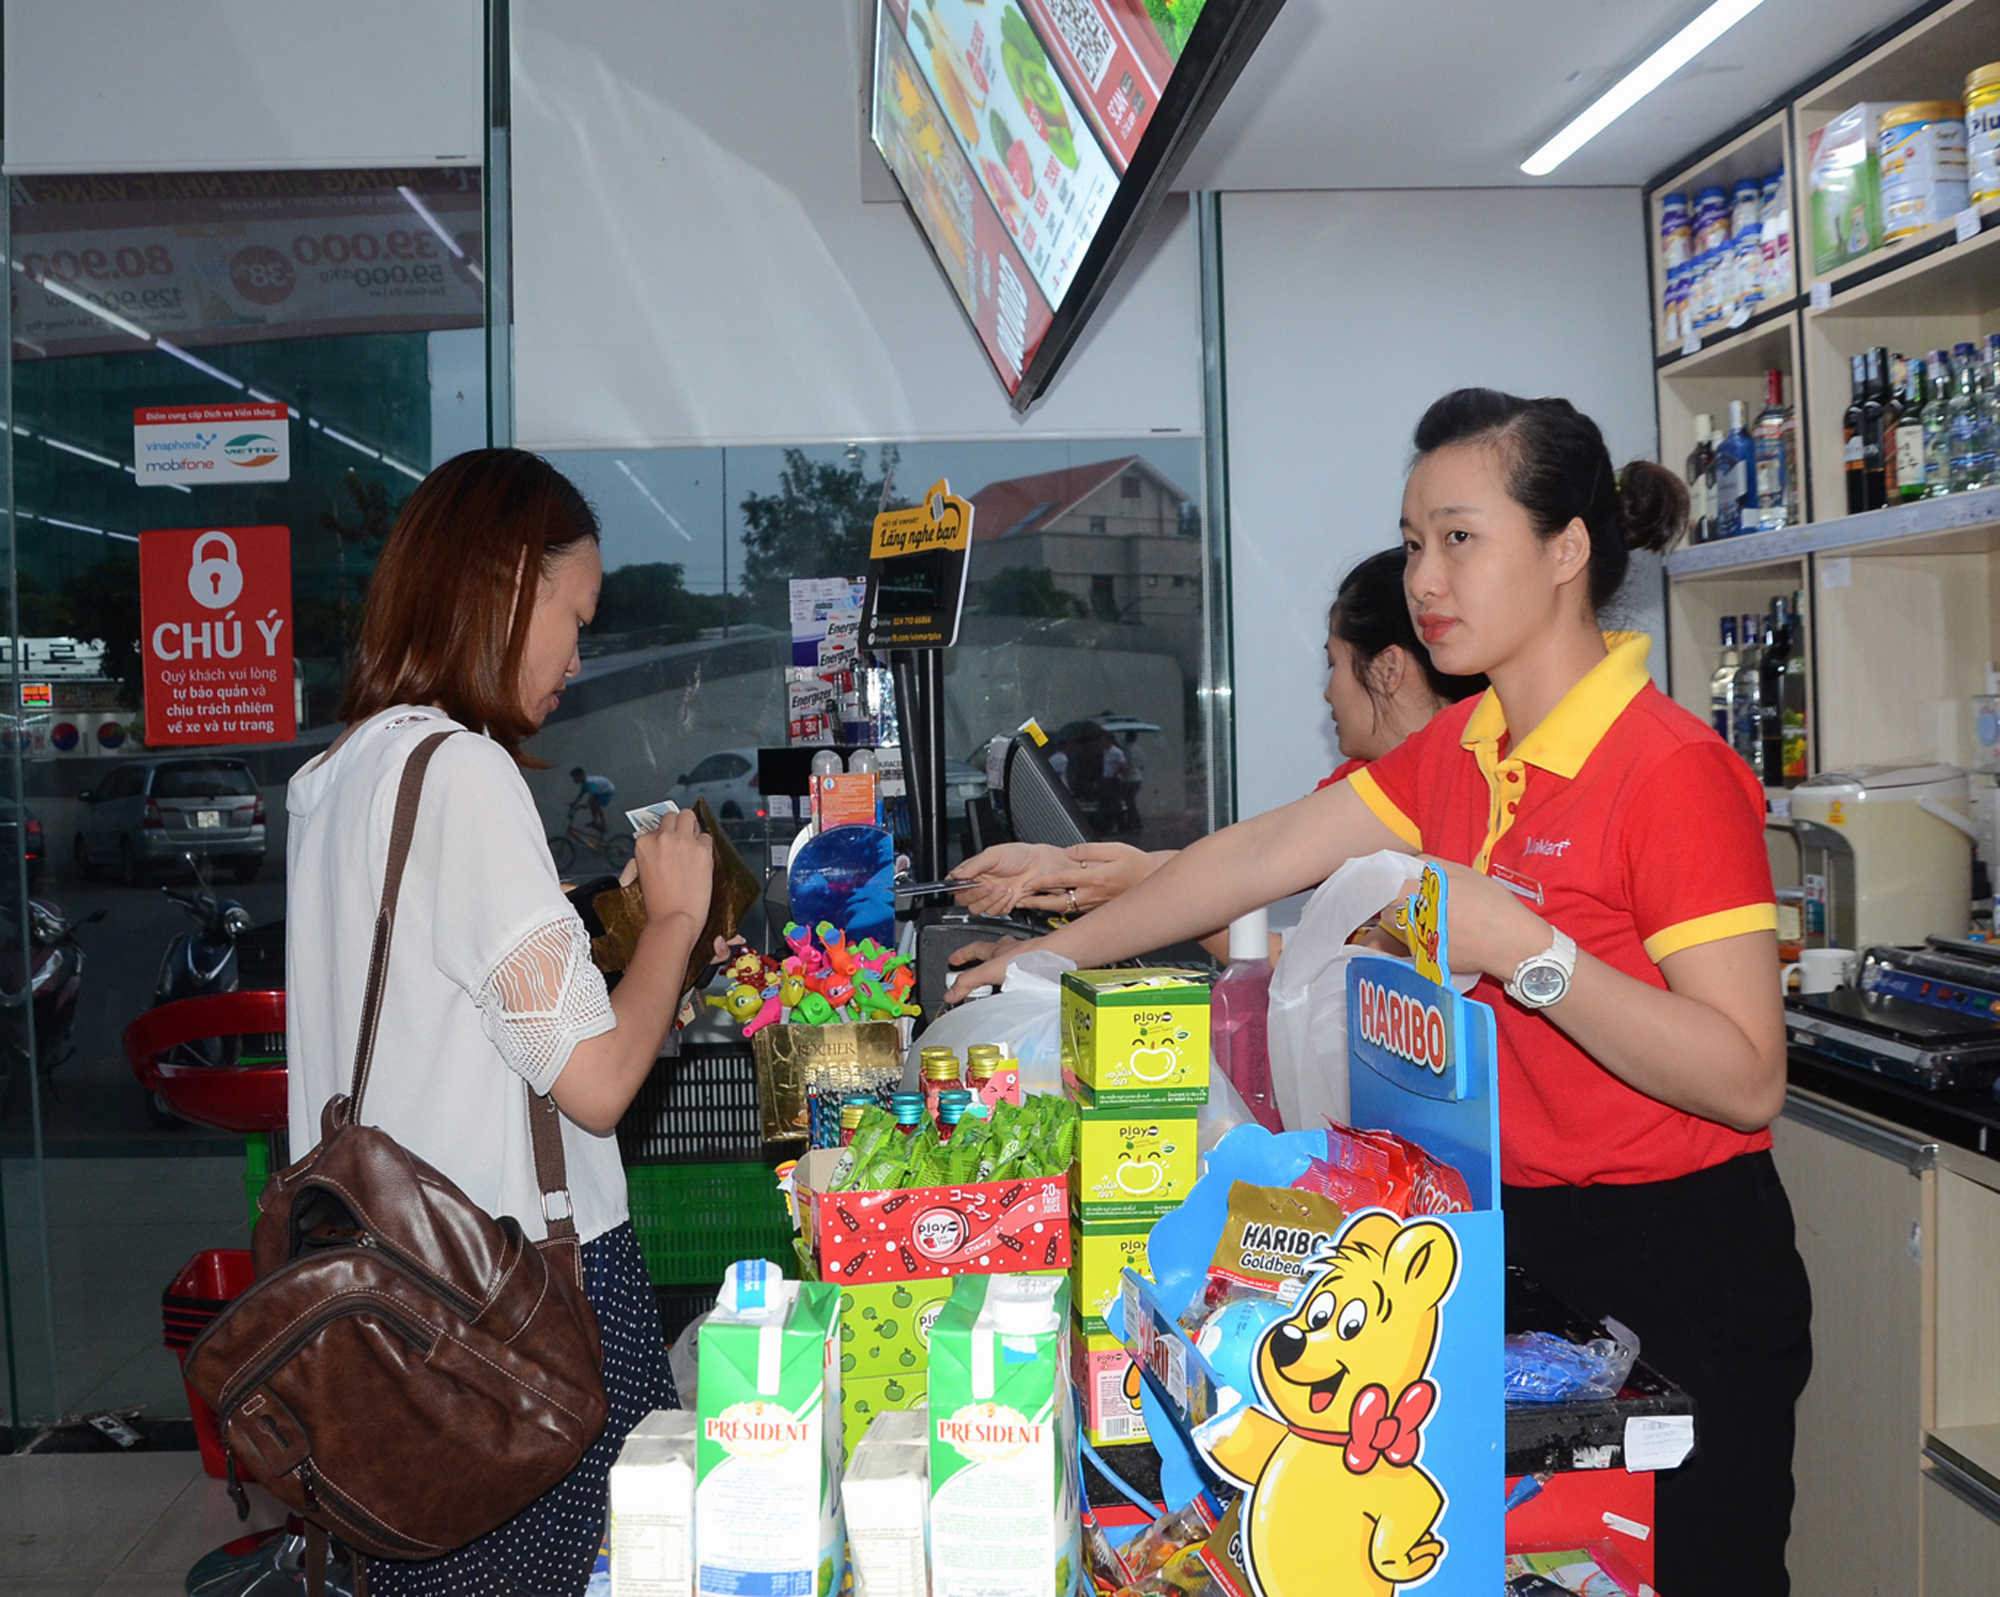 Cùng với chợ truyền thống, hệ thống siêu thị phát triển mạnh góp phần giúp người dân có nhiều sự lựa chọn. Trong ảnh: Người dân mua sắm tại VinMart+ trên đường Lê Văn Lộc, TP. Vũng Tàu.